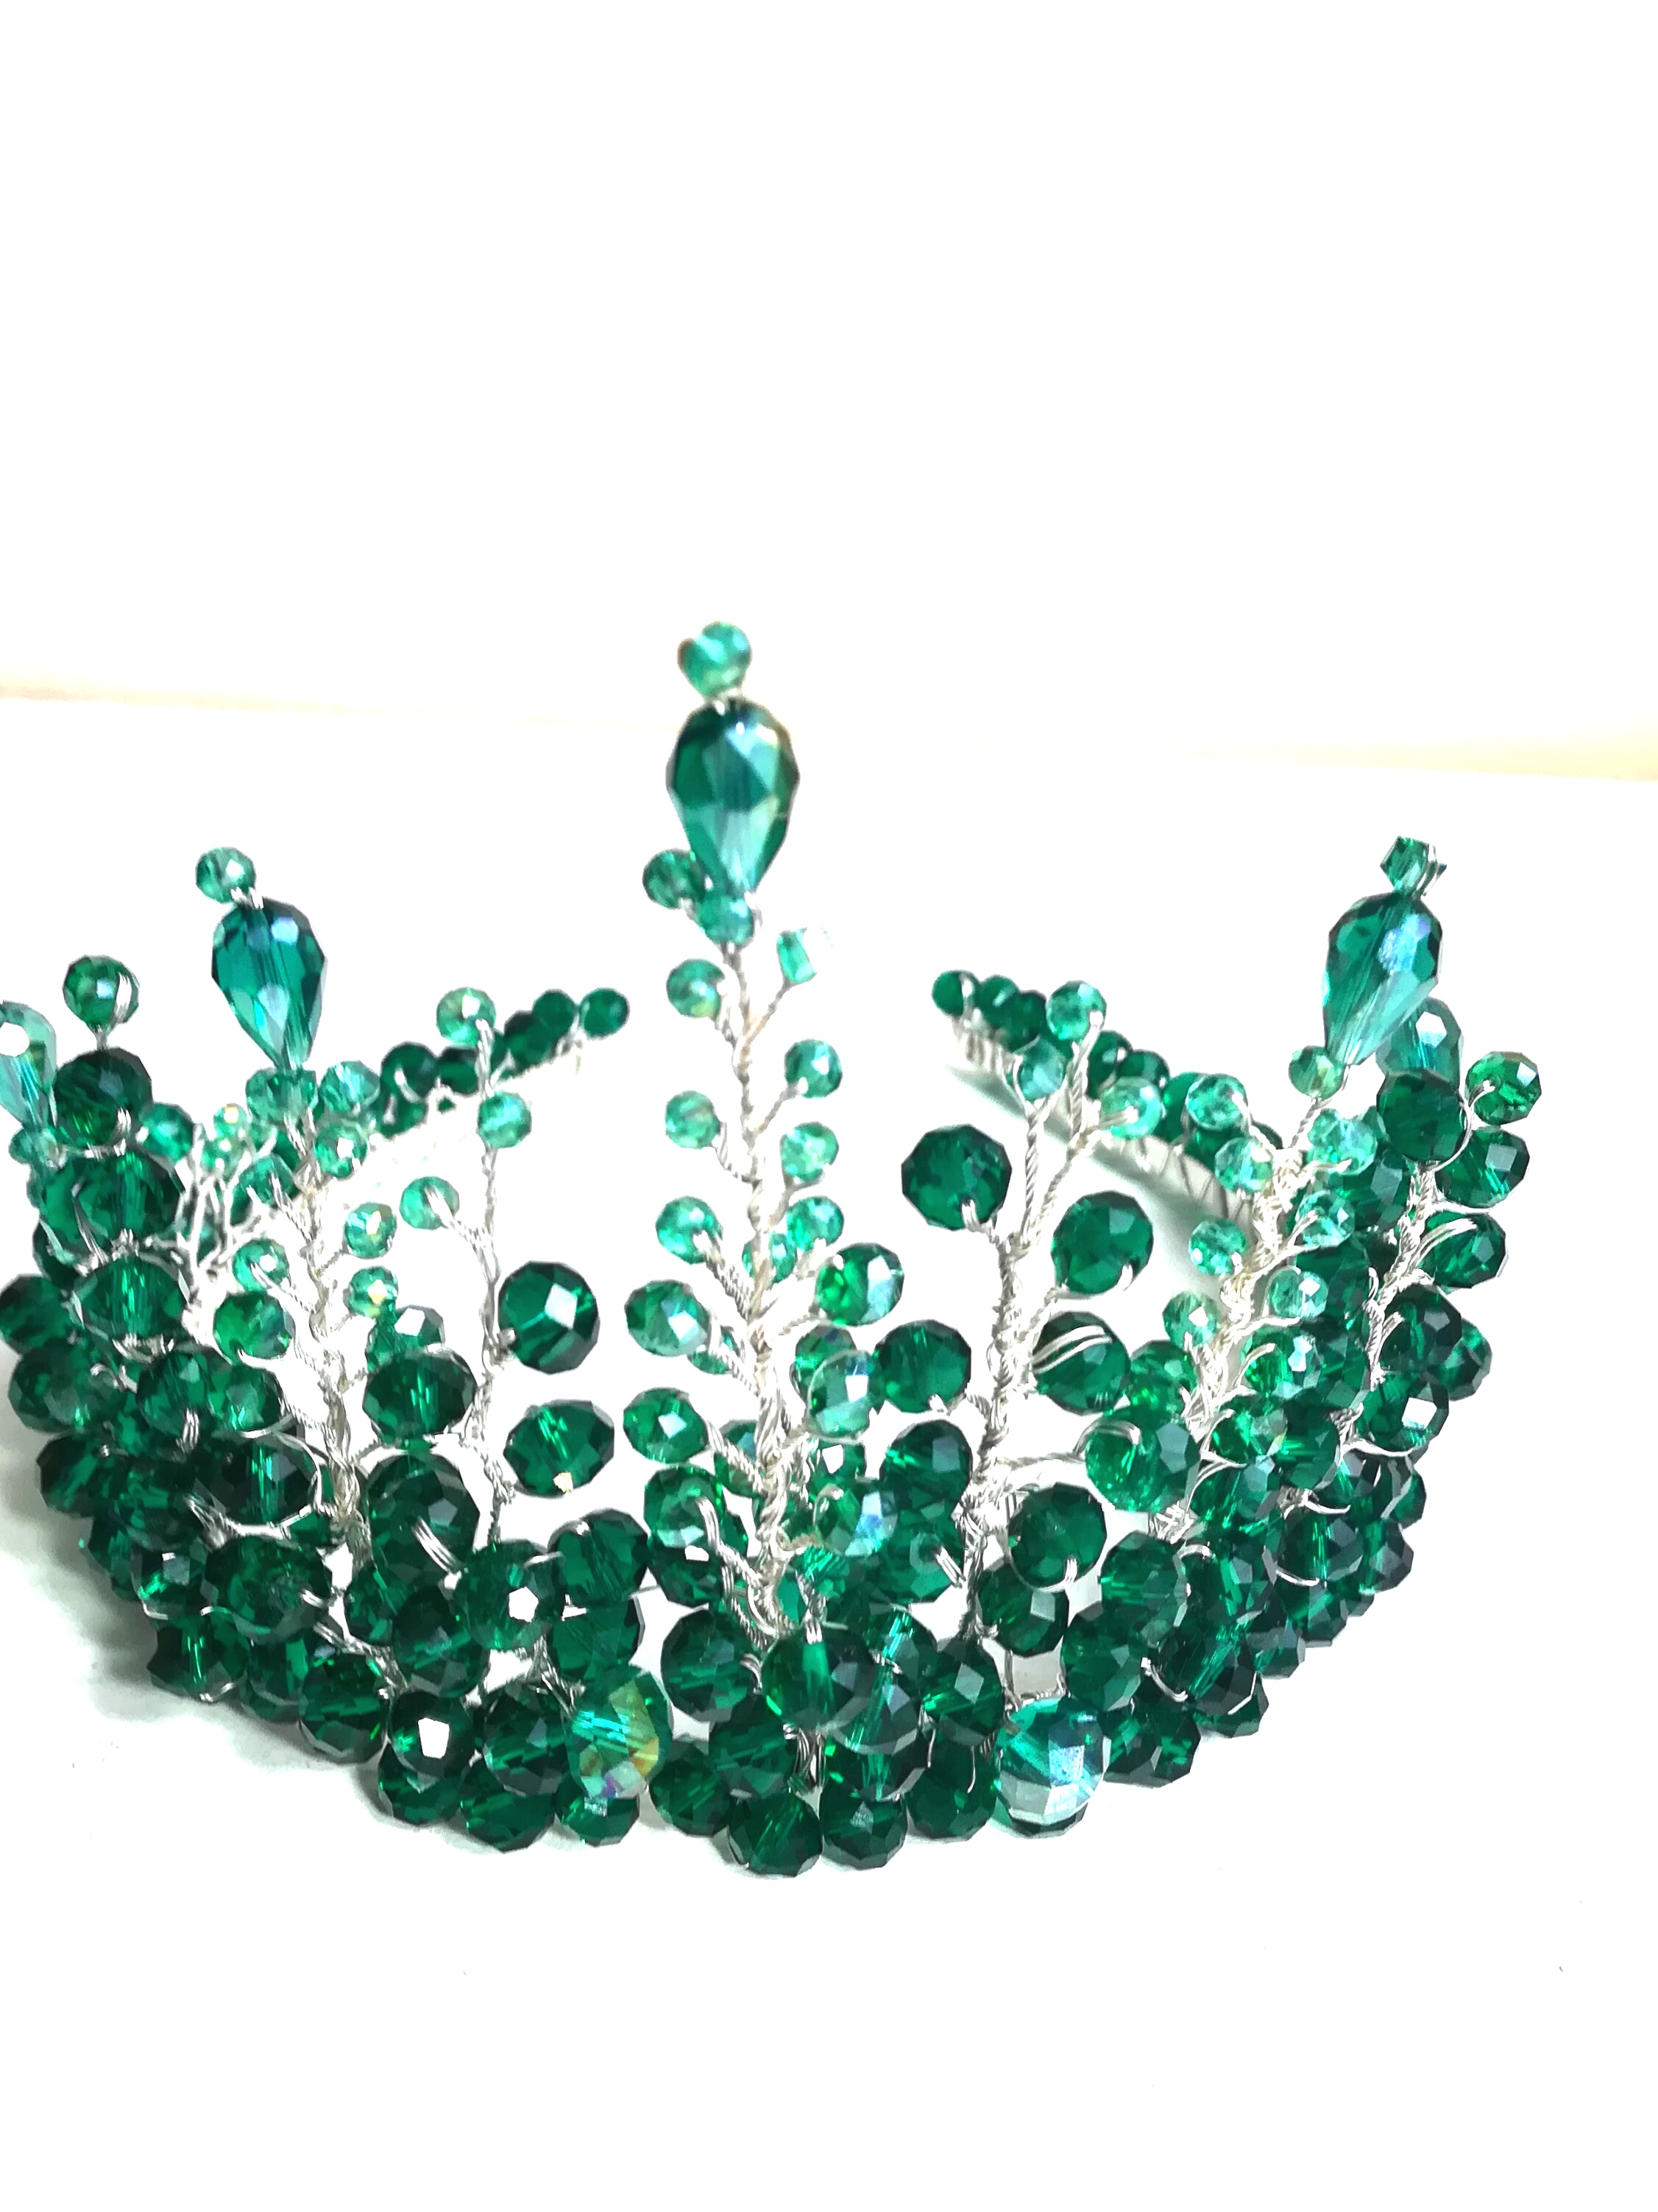 Impressionante coroa de noiva verde esmeralda com cristais - Deusa Artemis